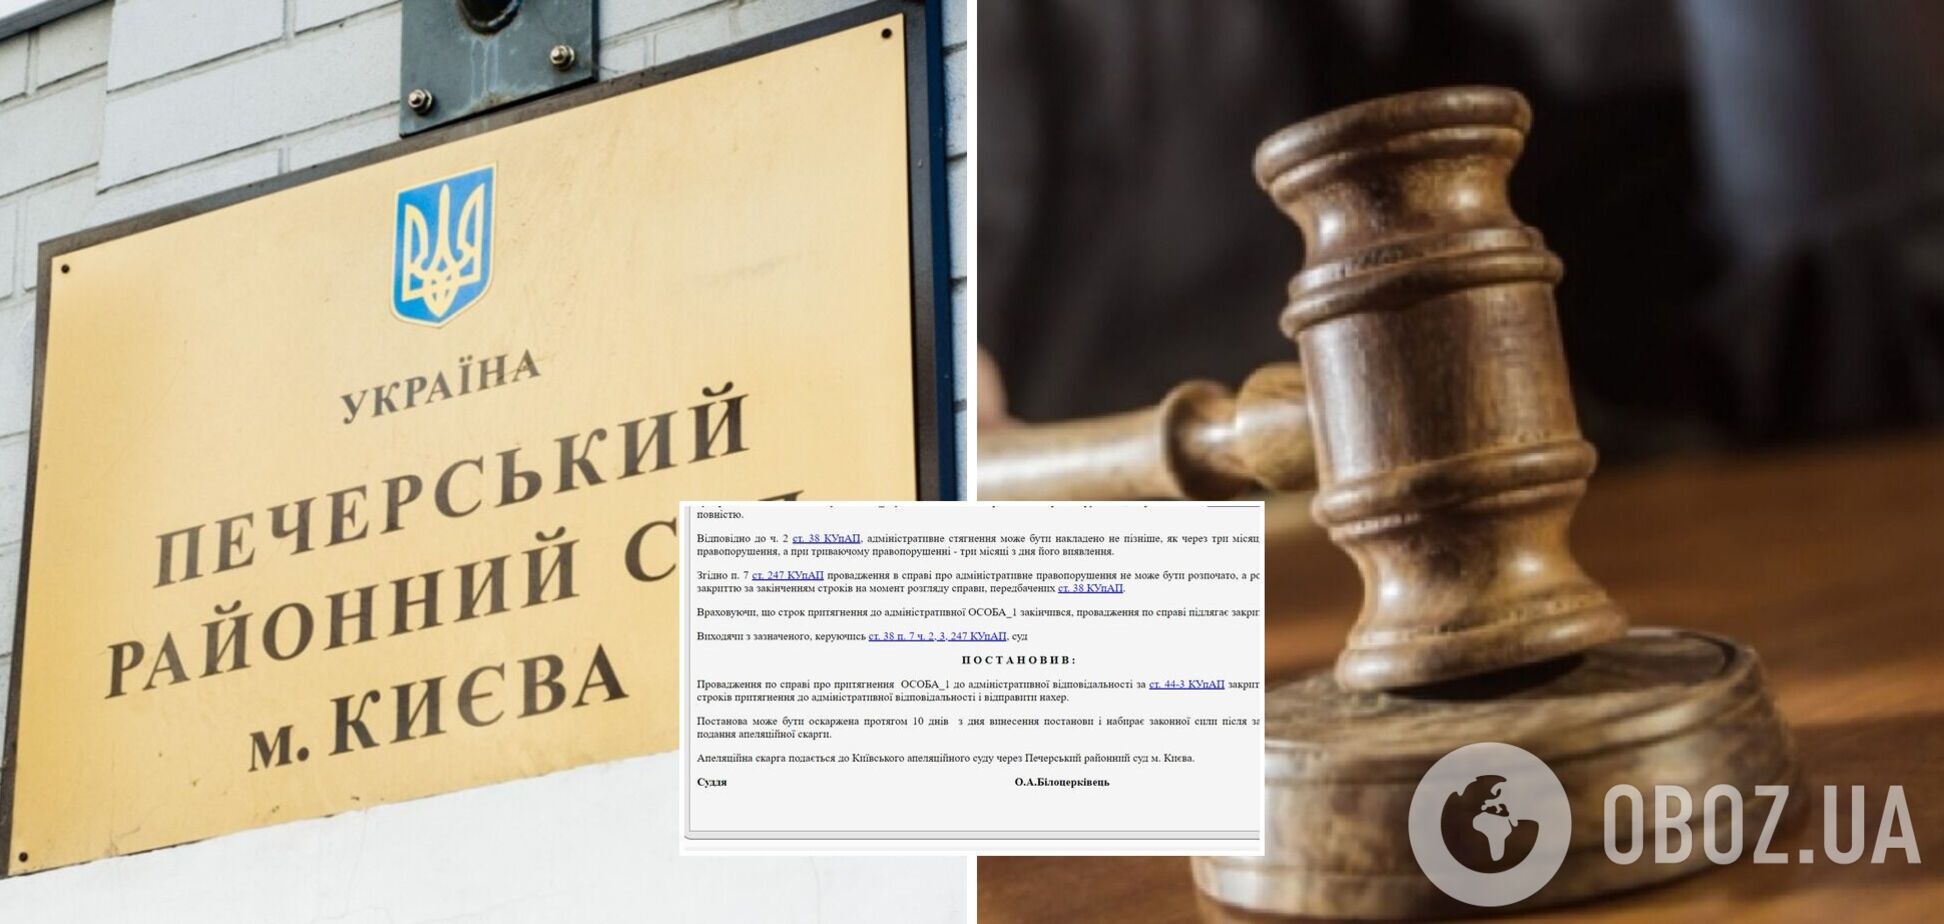 'Закрыть и отправить на*ер': в Печерском суде пояснили странное решение по нарушению карантина. Фото